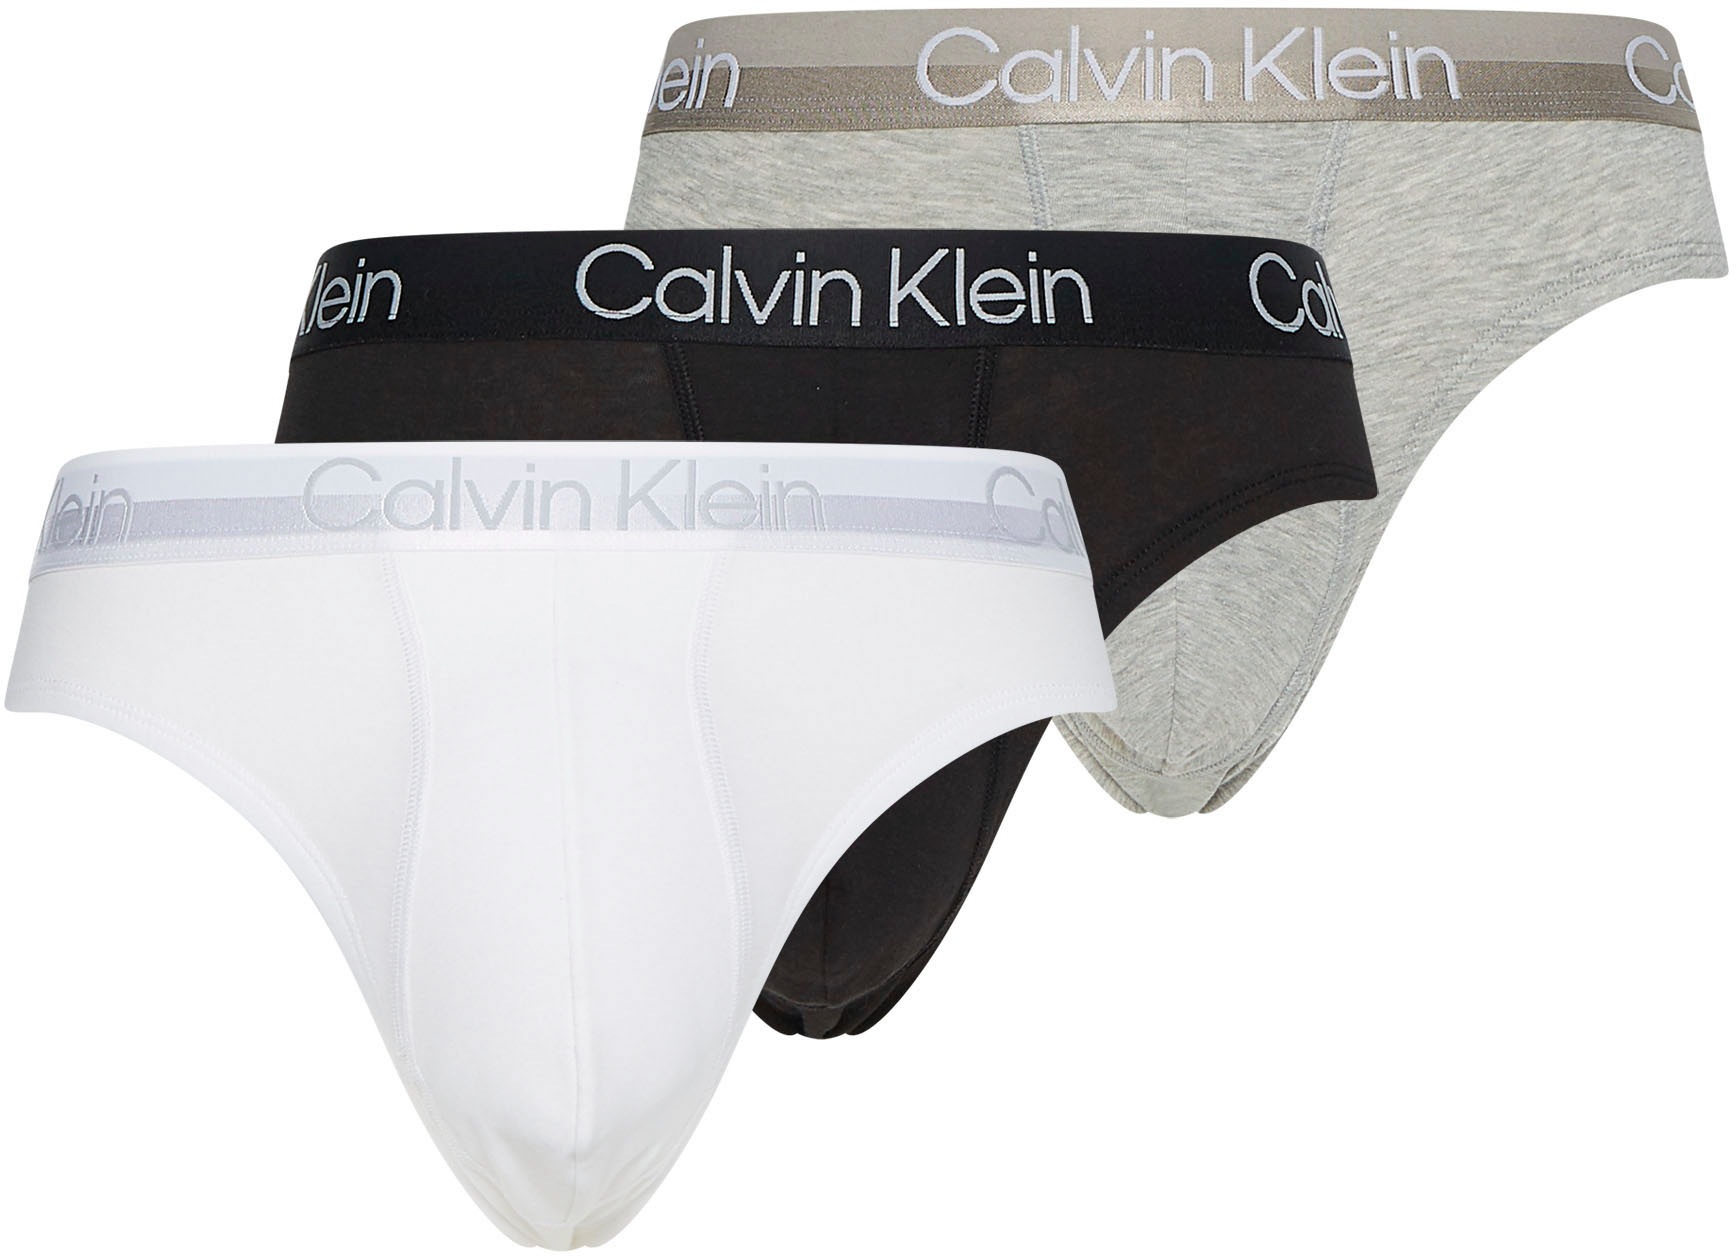 Calvin Klein Underwear Calvin KLEIN kelnaitės (Packung 3 St.)...